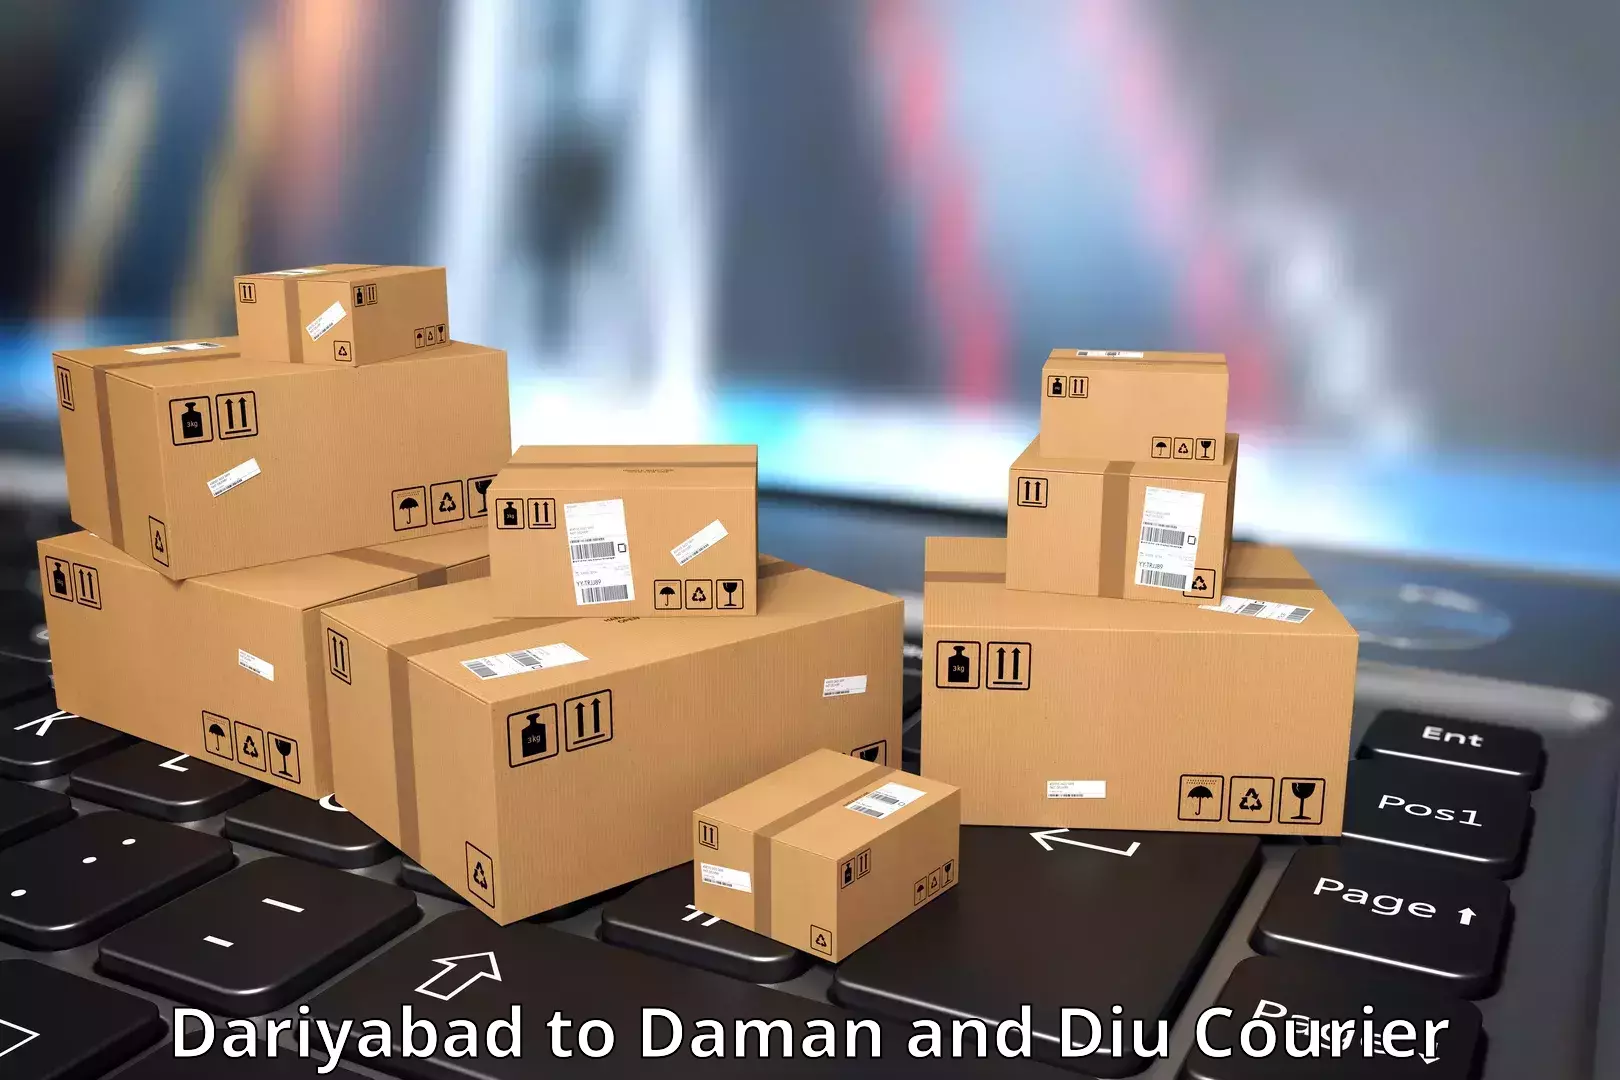 High-capacity shipping options Dariyabad to Diu